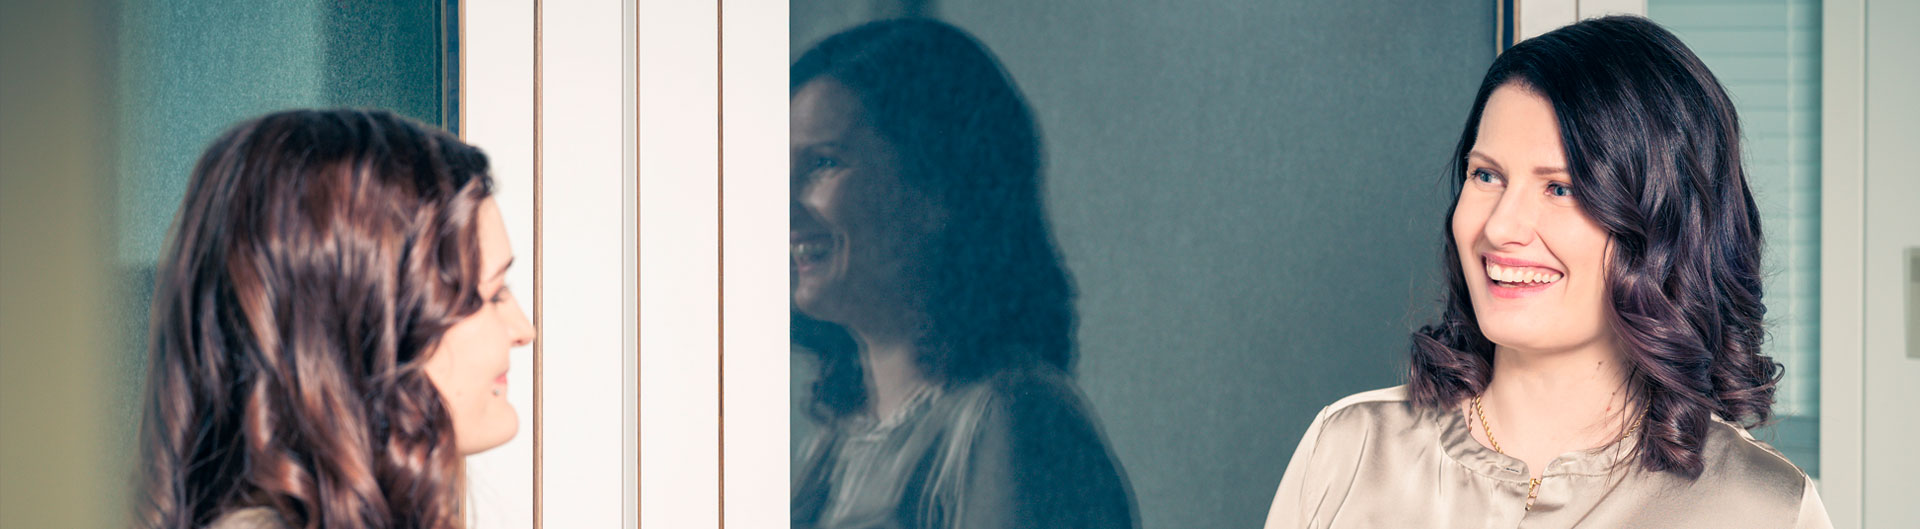 Kaksi hymyilevää pitkähiuksista naista keskustelee, taustalla lasiovet joista toisen naisen peilikuva heijastuu.